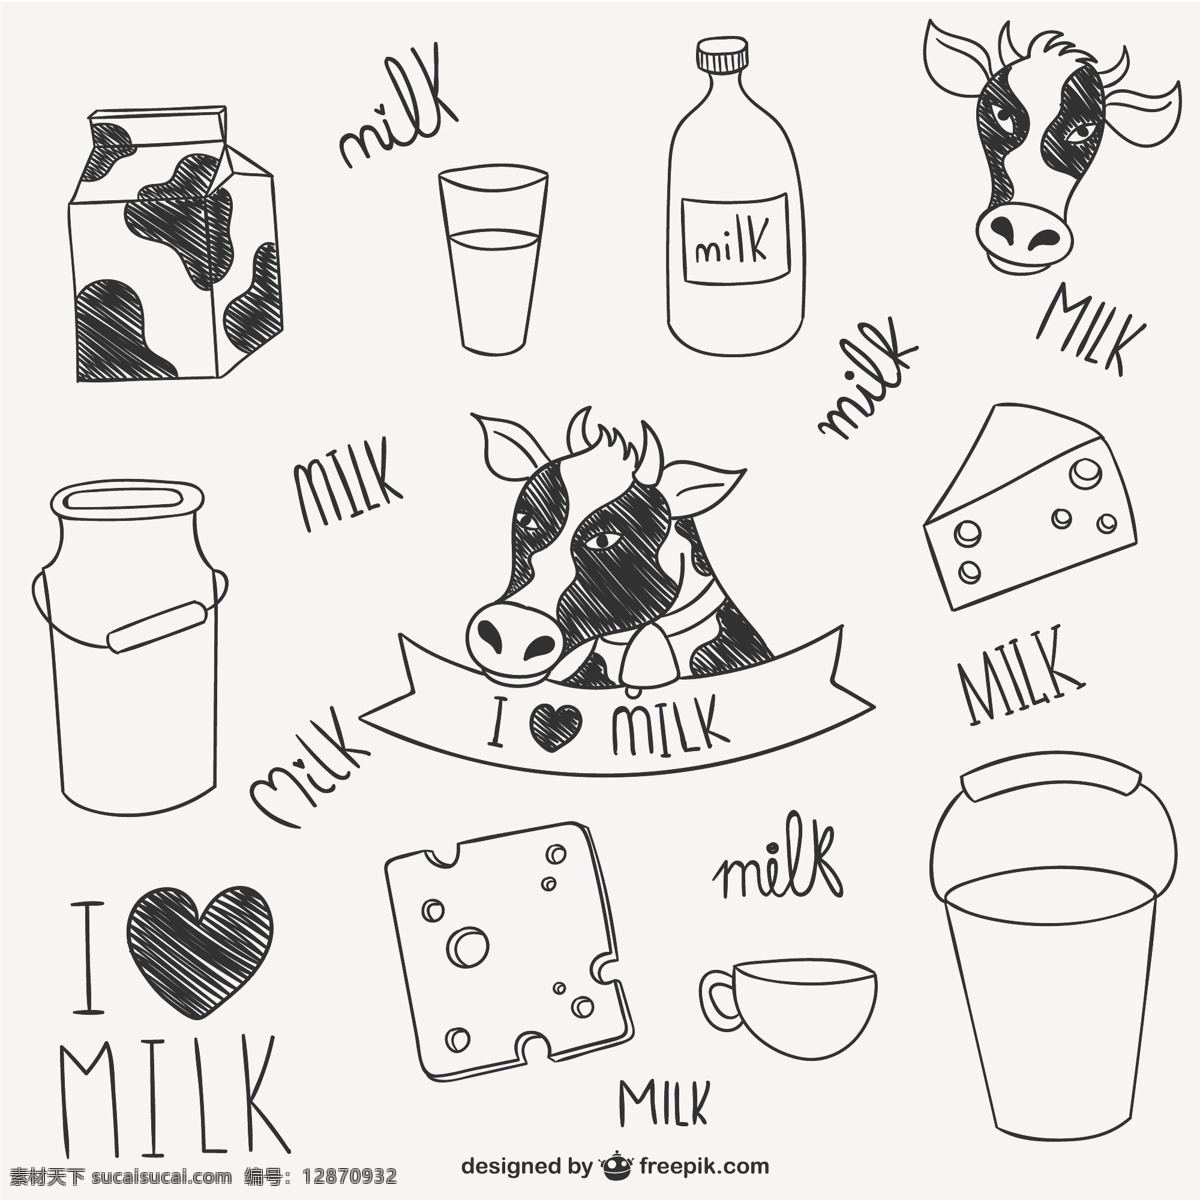 奶图合集 牛奶 瓶子 玻璃 奶酪 牛奶瓶 收集 图纸 牛奶玻璃 纸盒 牛奶盒 白色